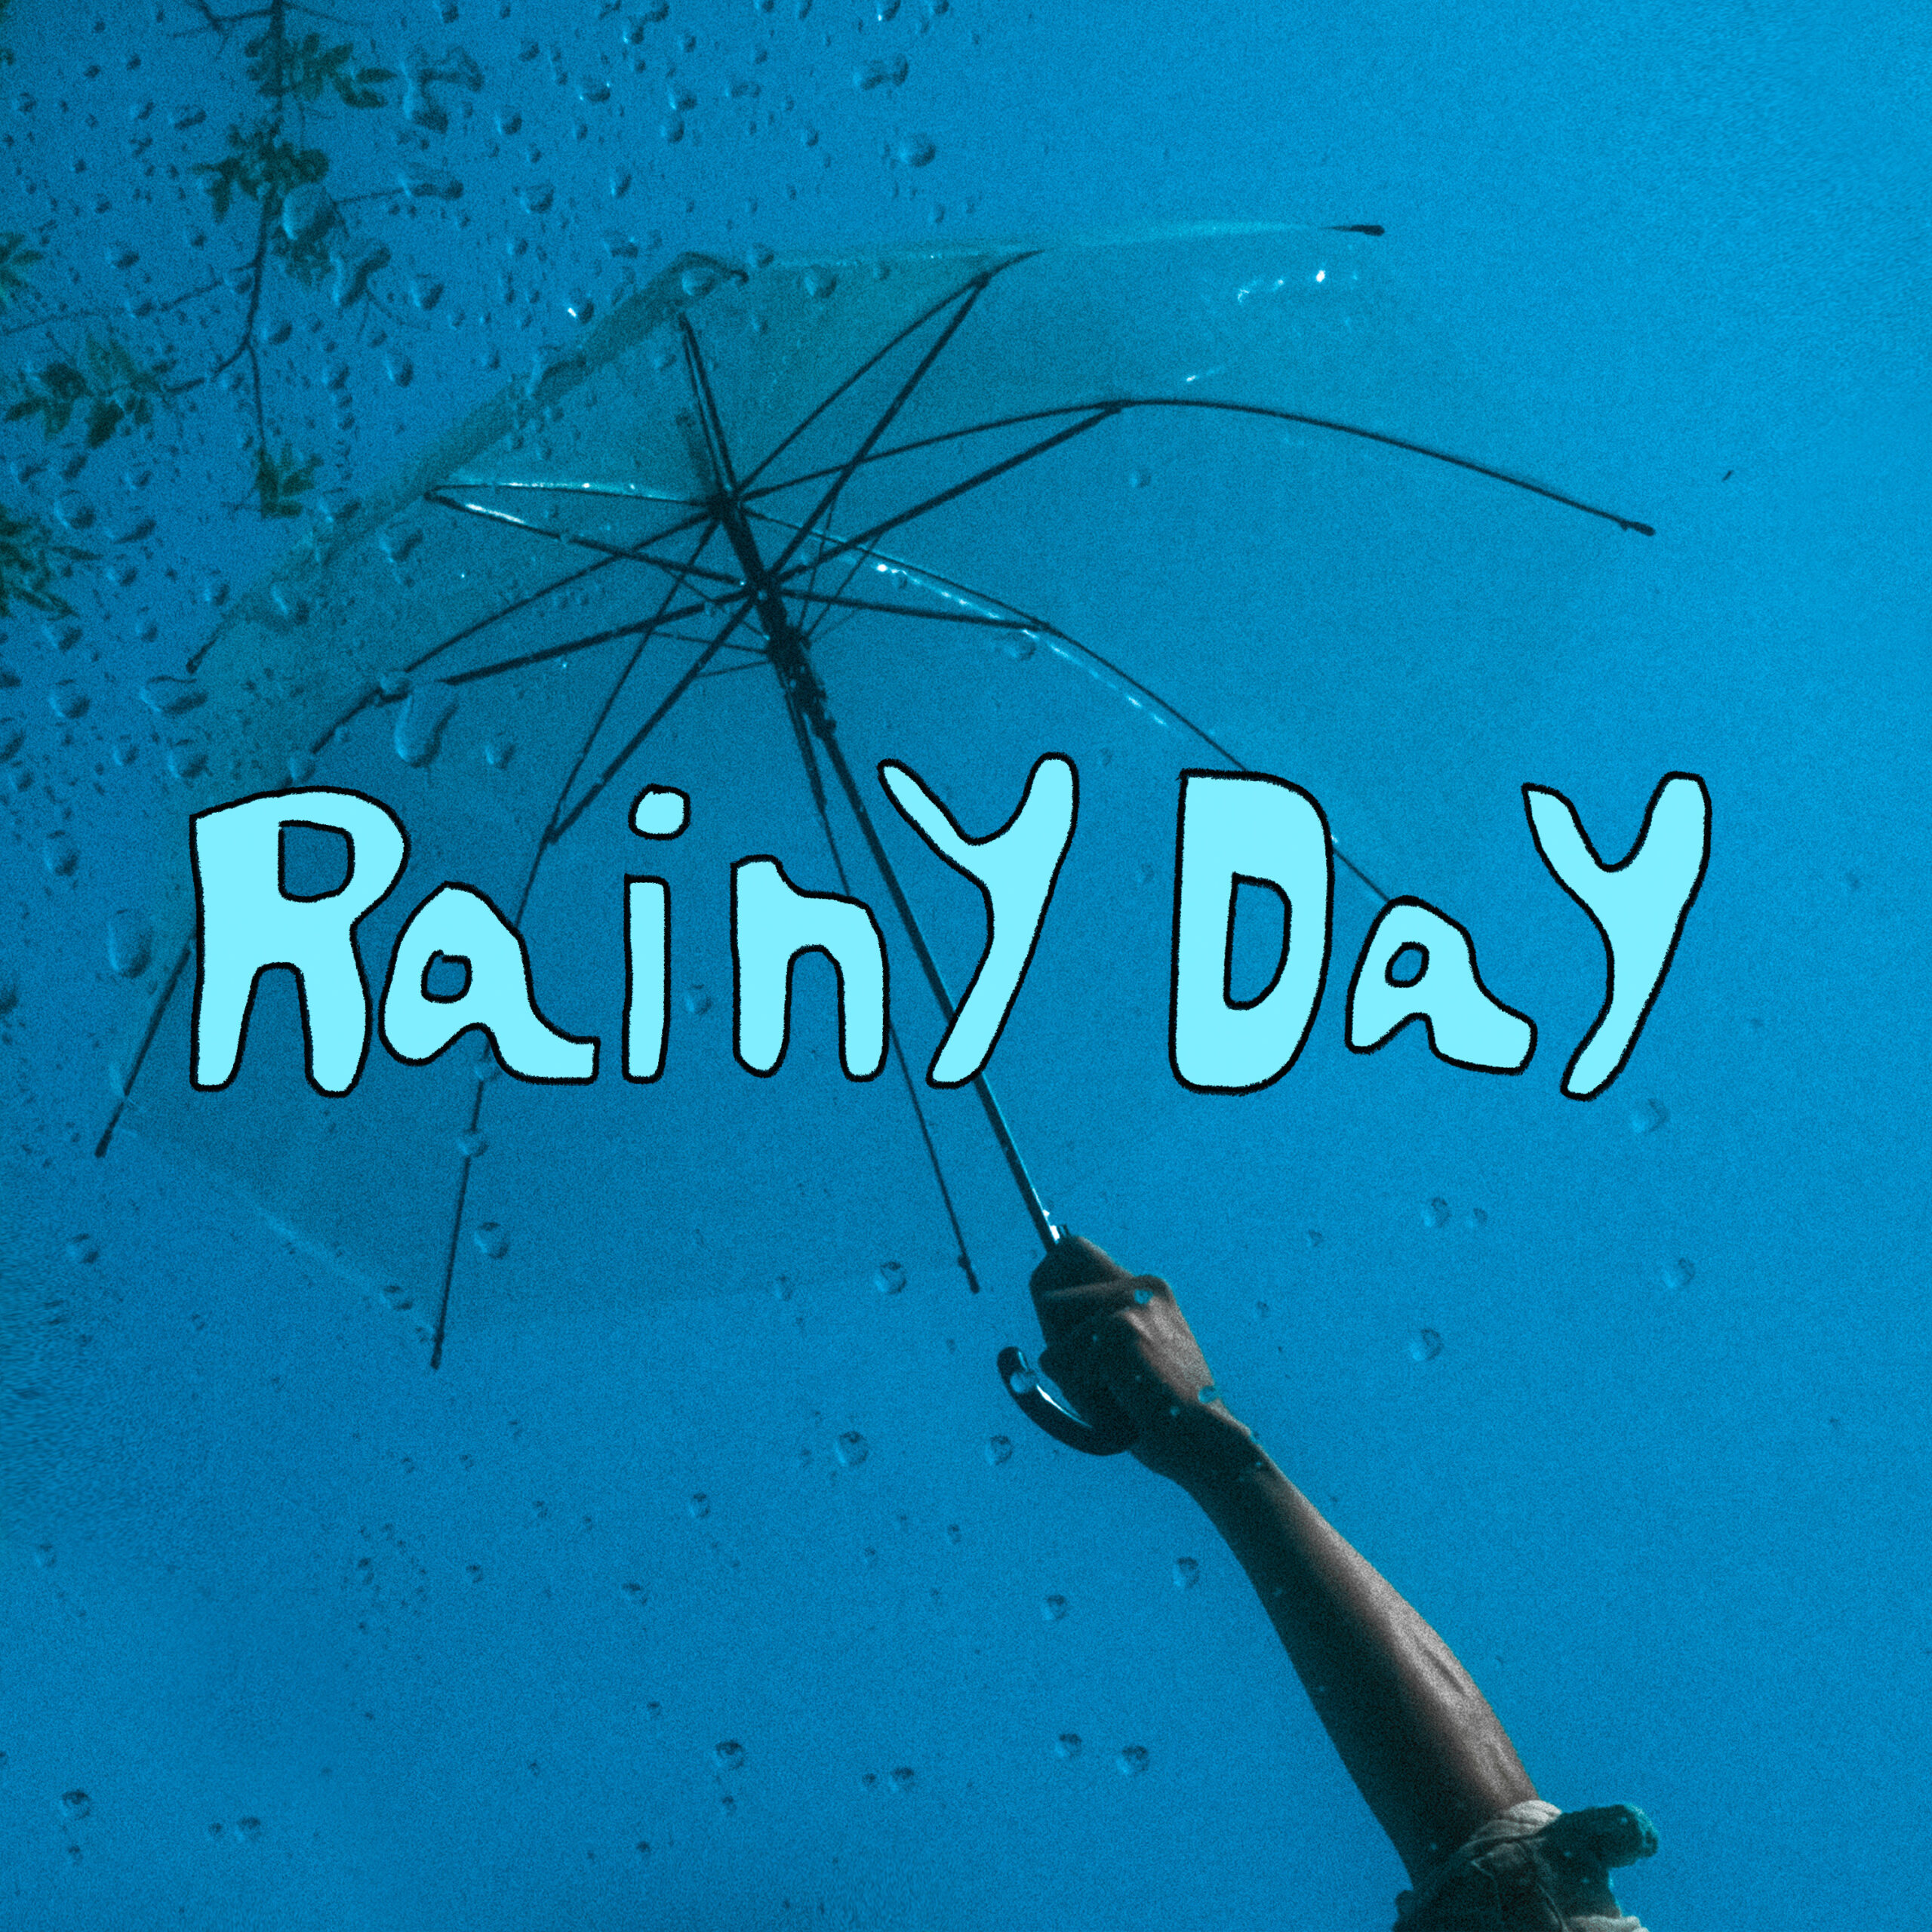 Rainy Day